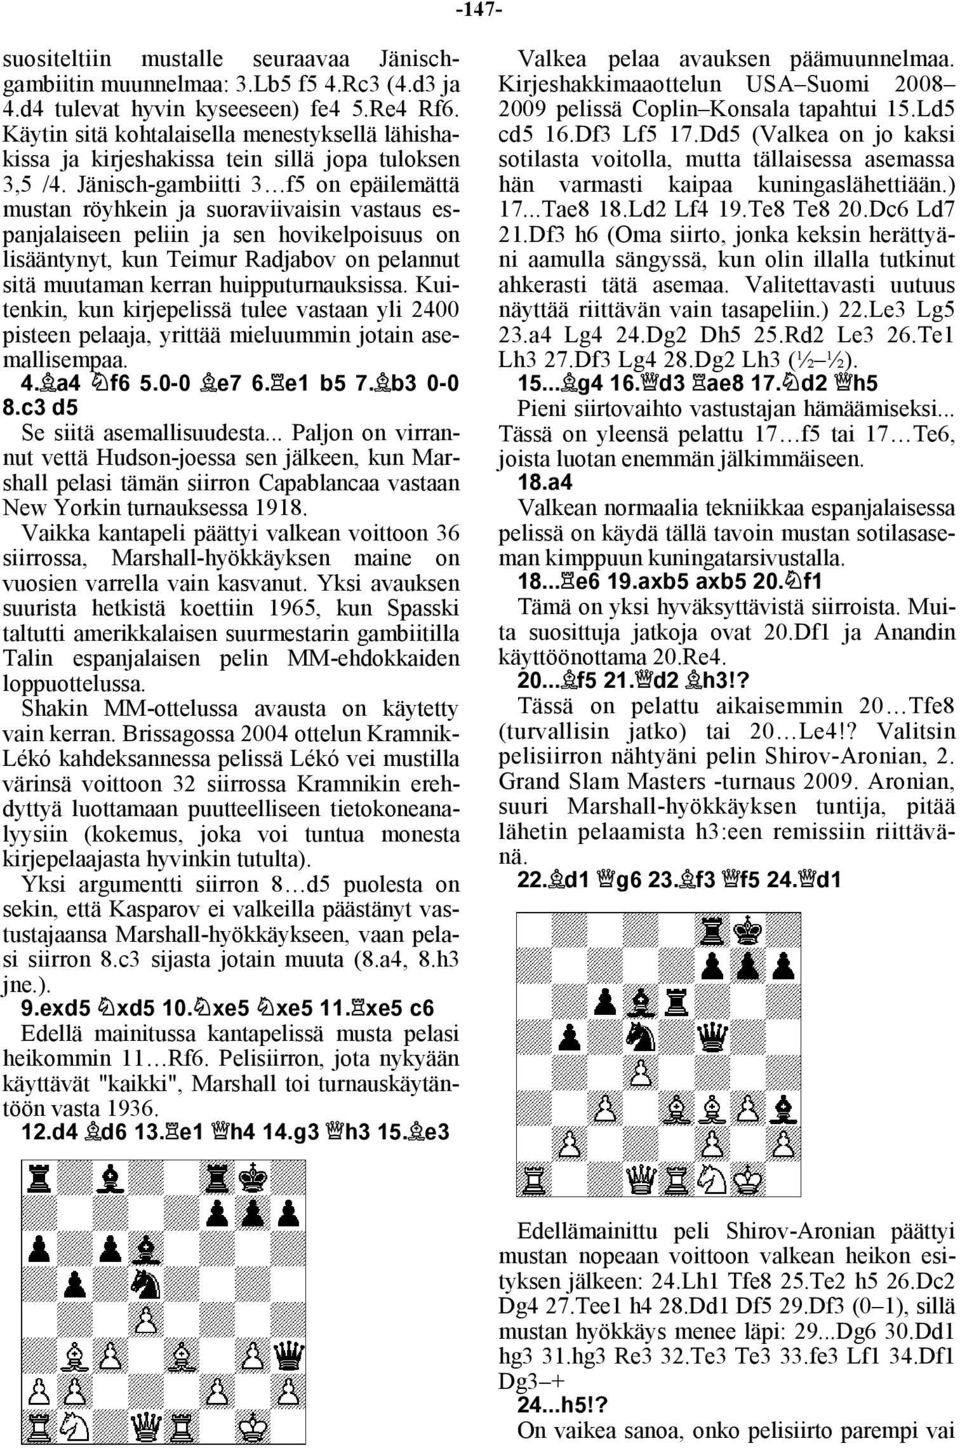 Jänisch-gambiitti 3 f5 on epäilemättä mustan röyhkein ja suoraviivaisin vastaus espanjalaiseen peliin ja sen hovikelpoisuus on lisääntynyt, kun Teimur Radjabov on pelannut sitä muutaman kerran